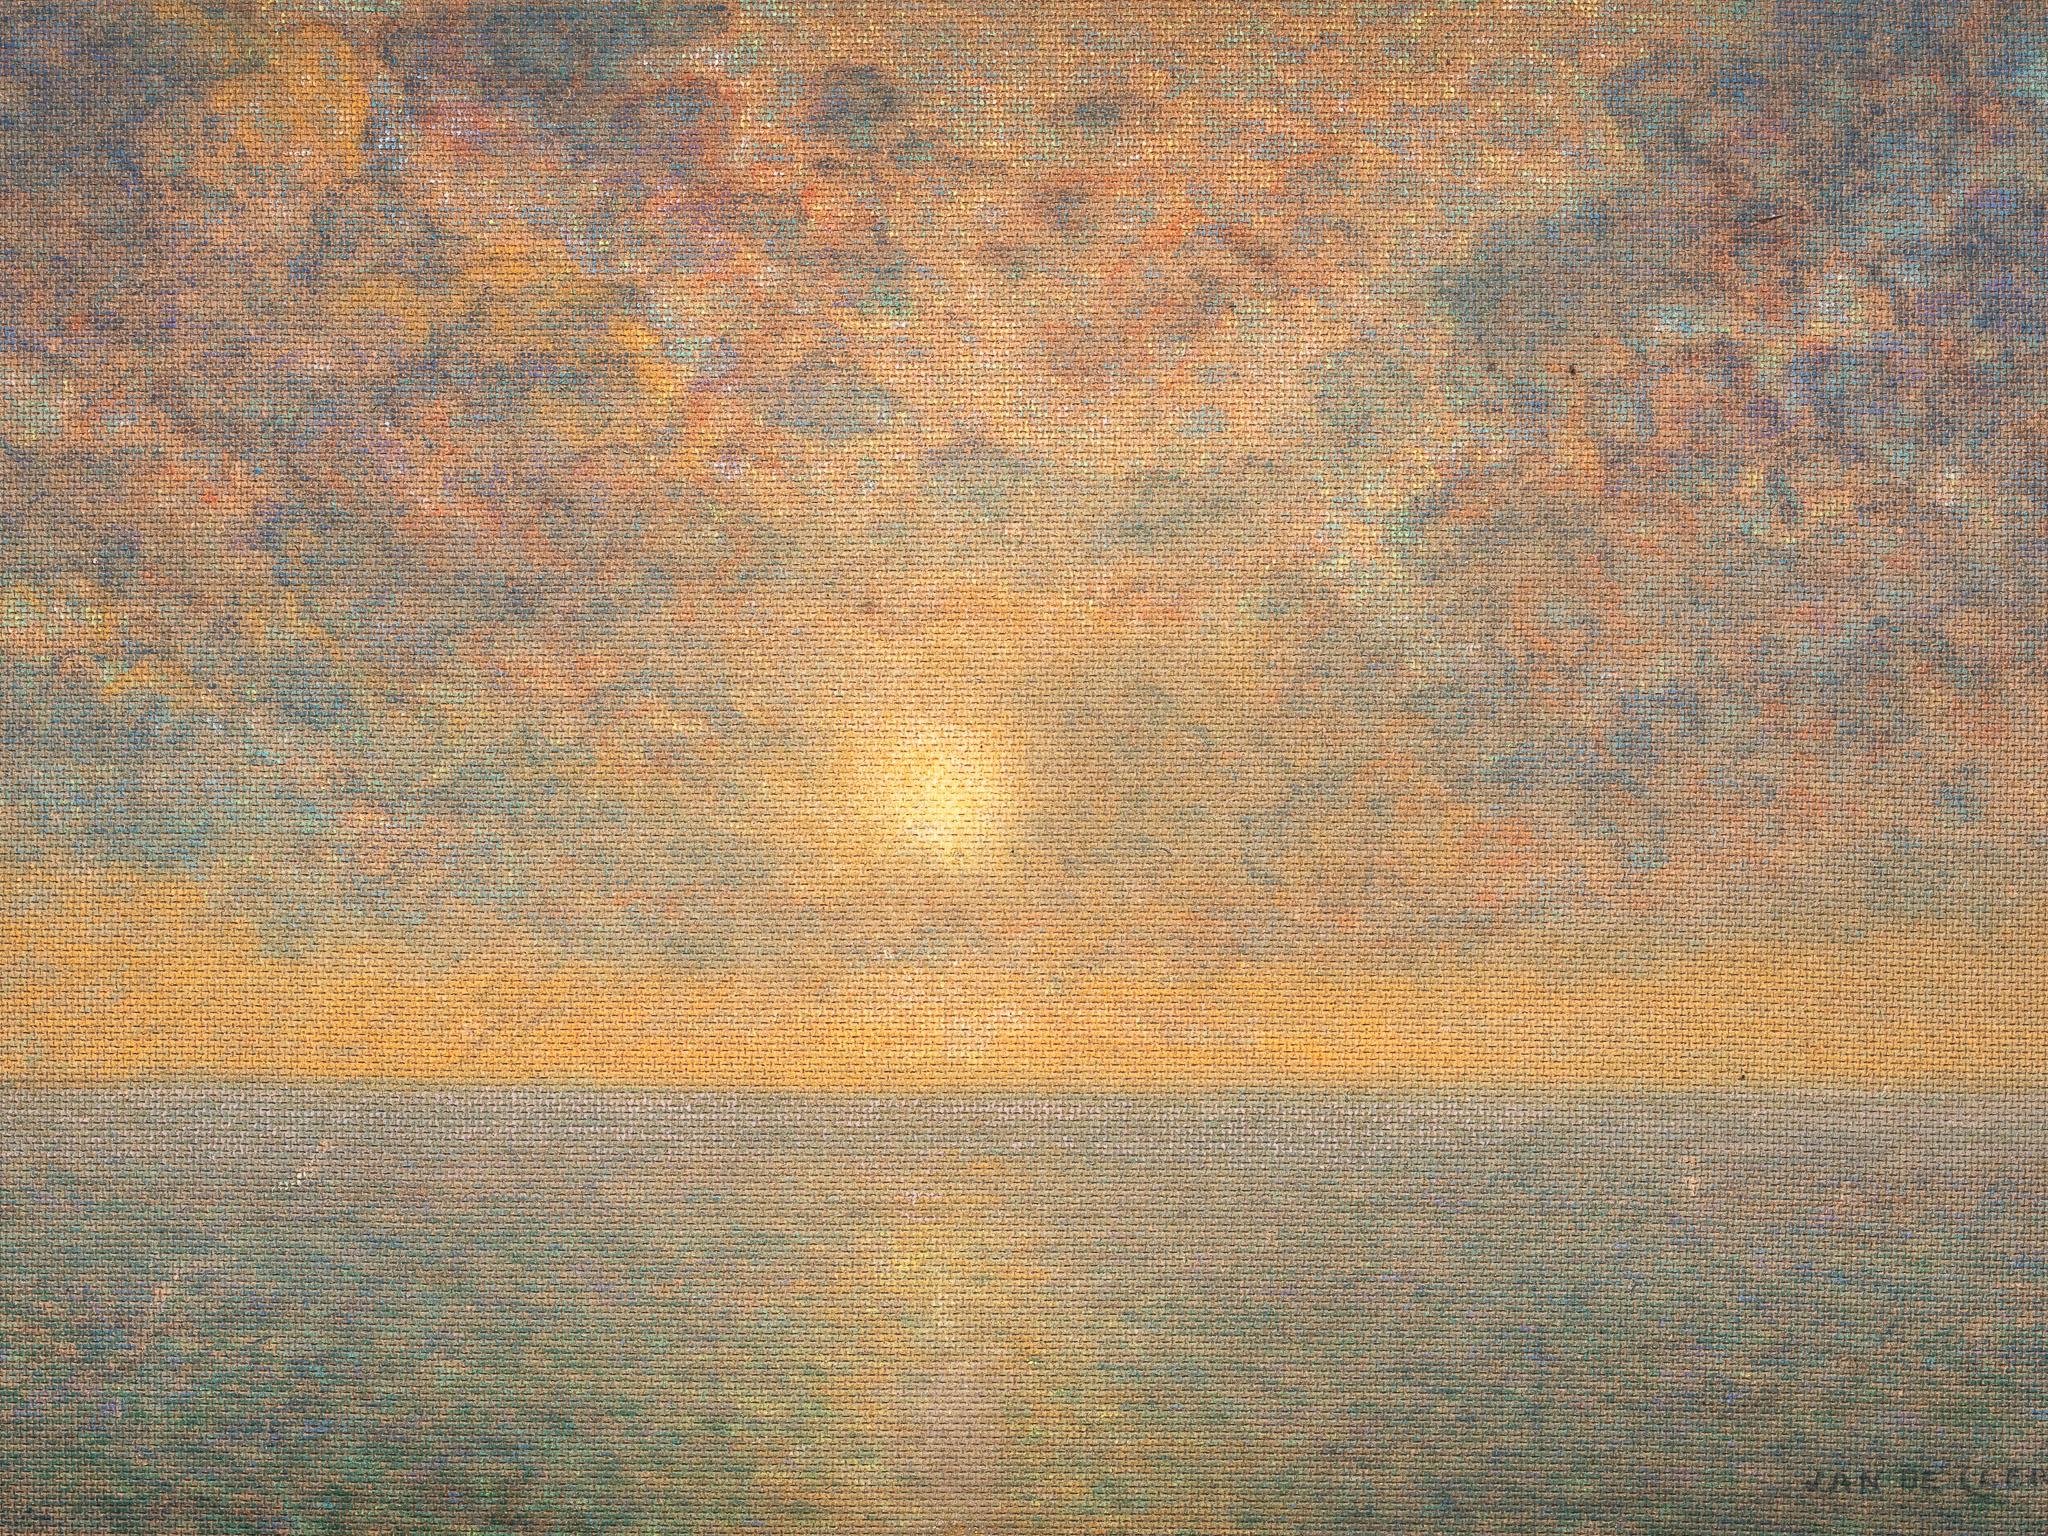 Sonnenuntergang über dem Meer, Jan de Clerck (1891 - 1964), Öl auf unbeleuchtetem Leinwand, signiert.